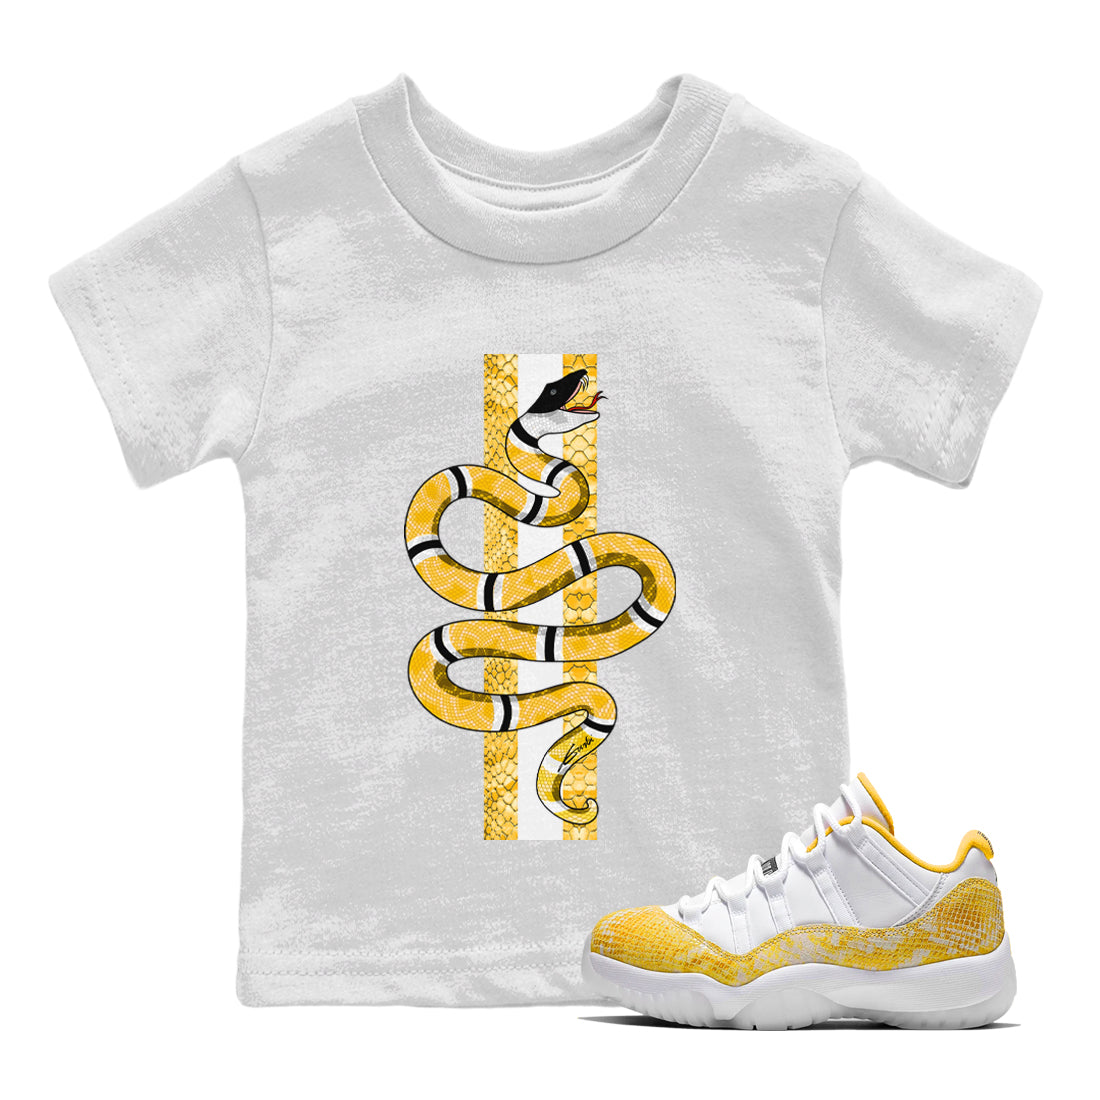  Gold Jordan Shirt